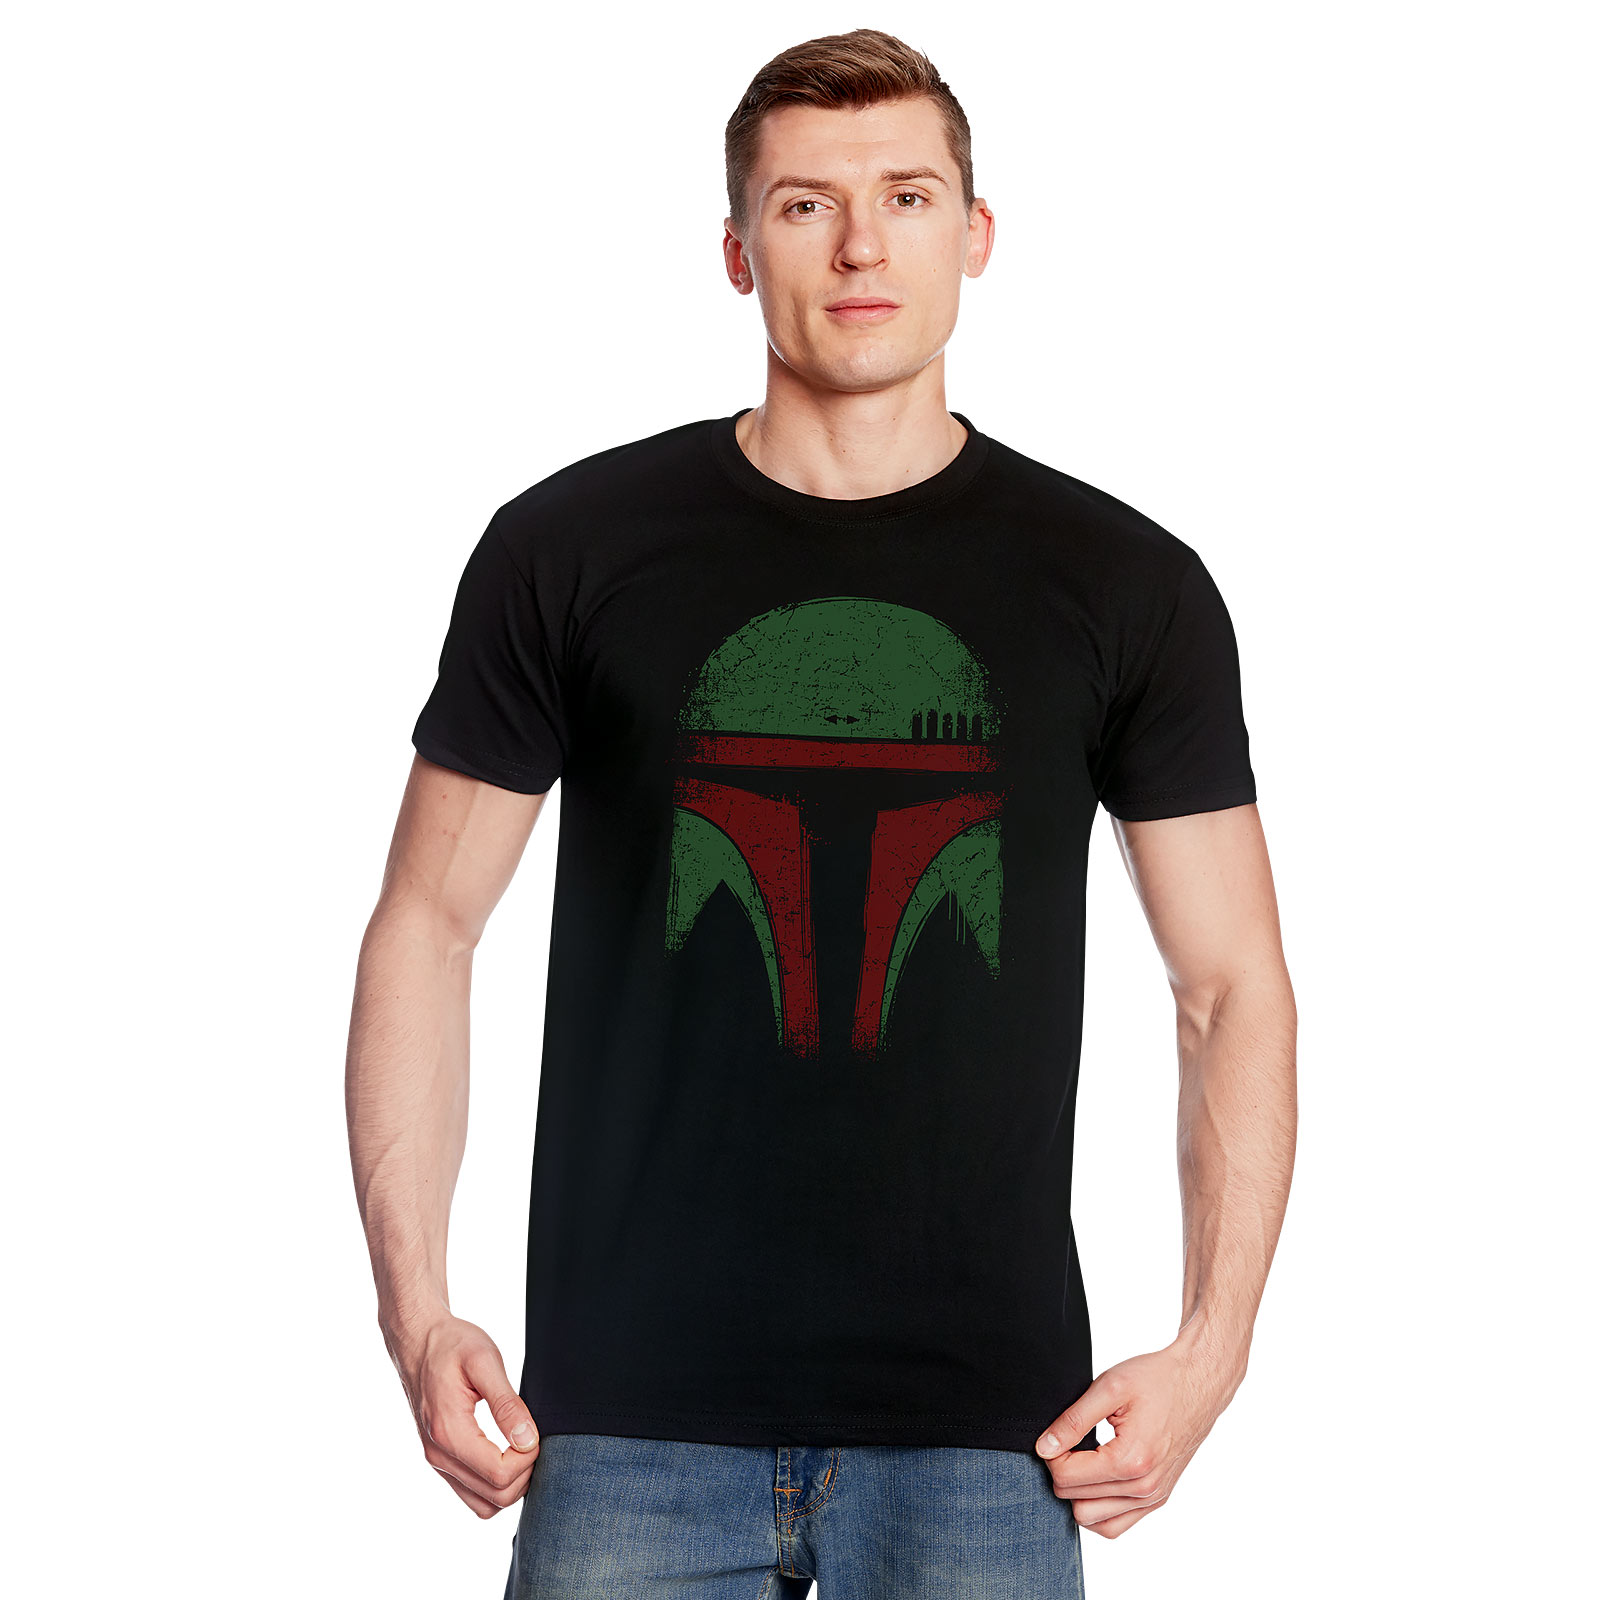 Boba Face T-shirt voor Star Wars Fans zwart